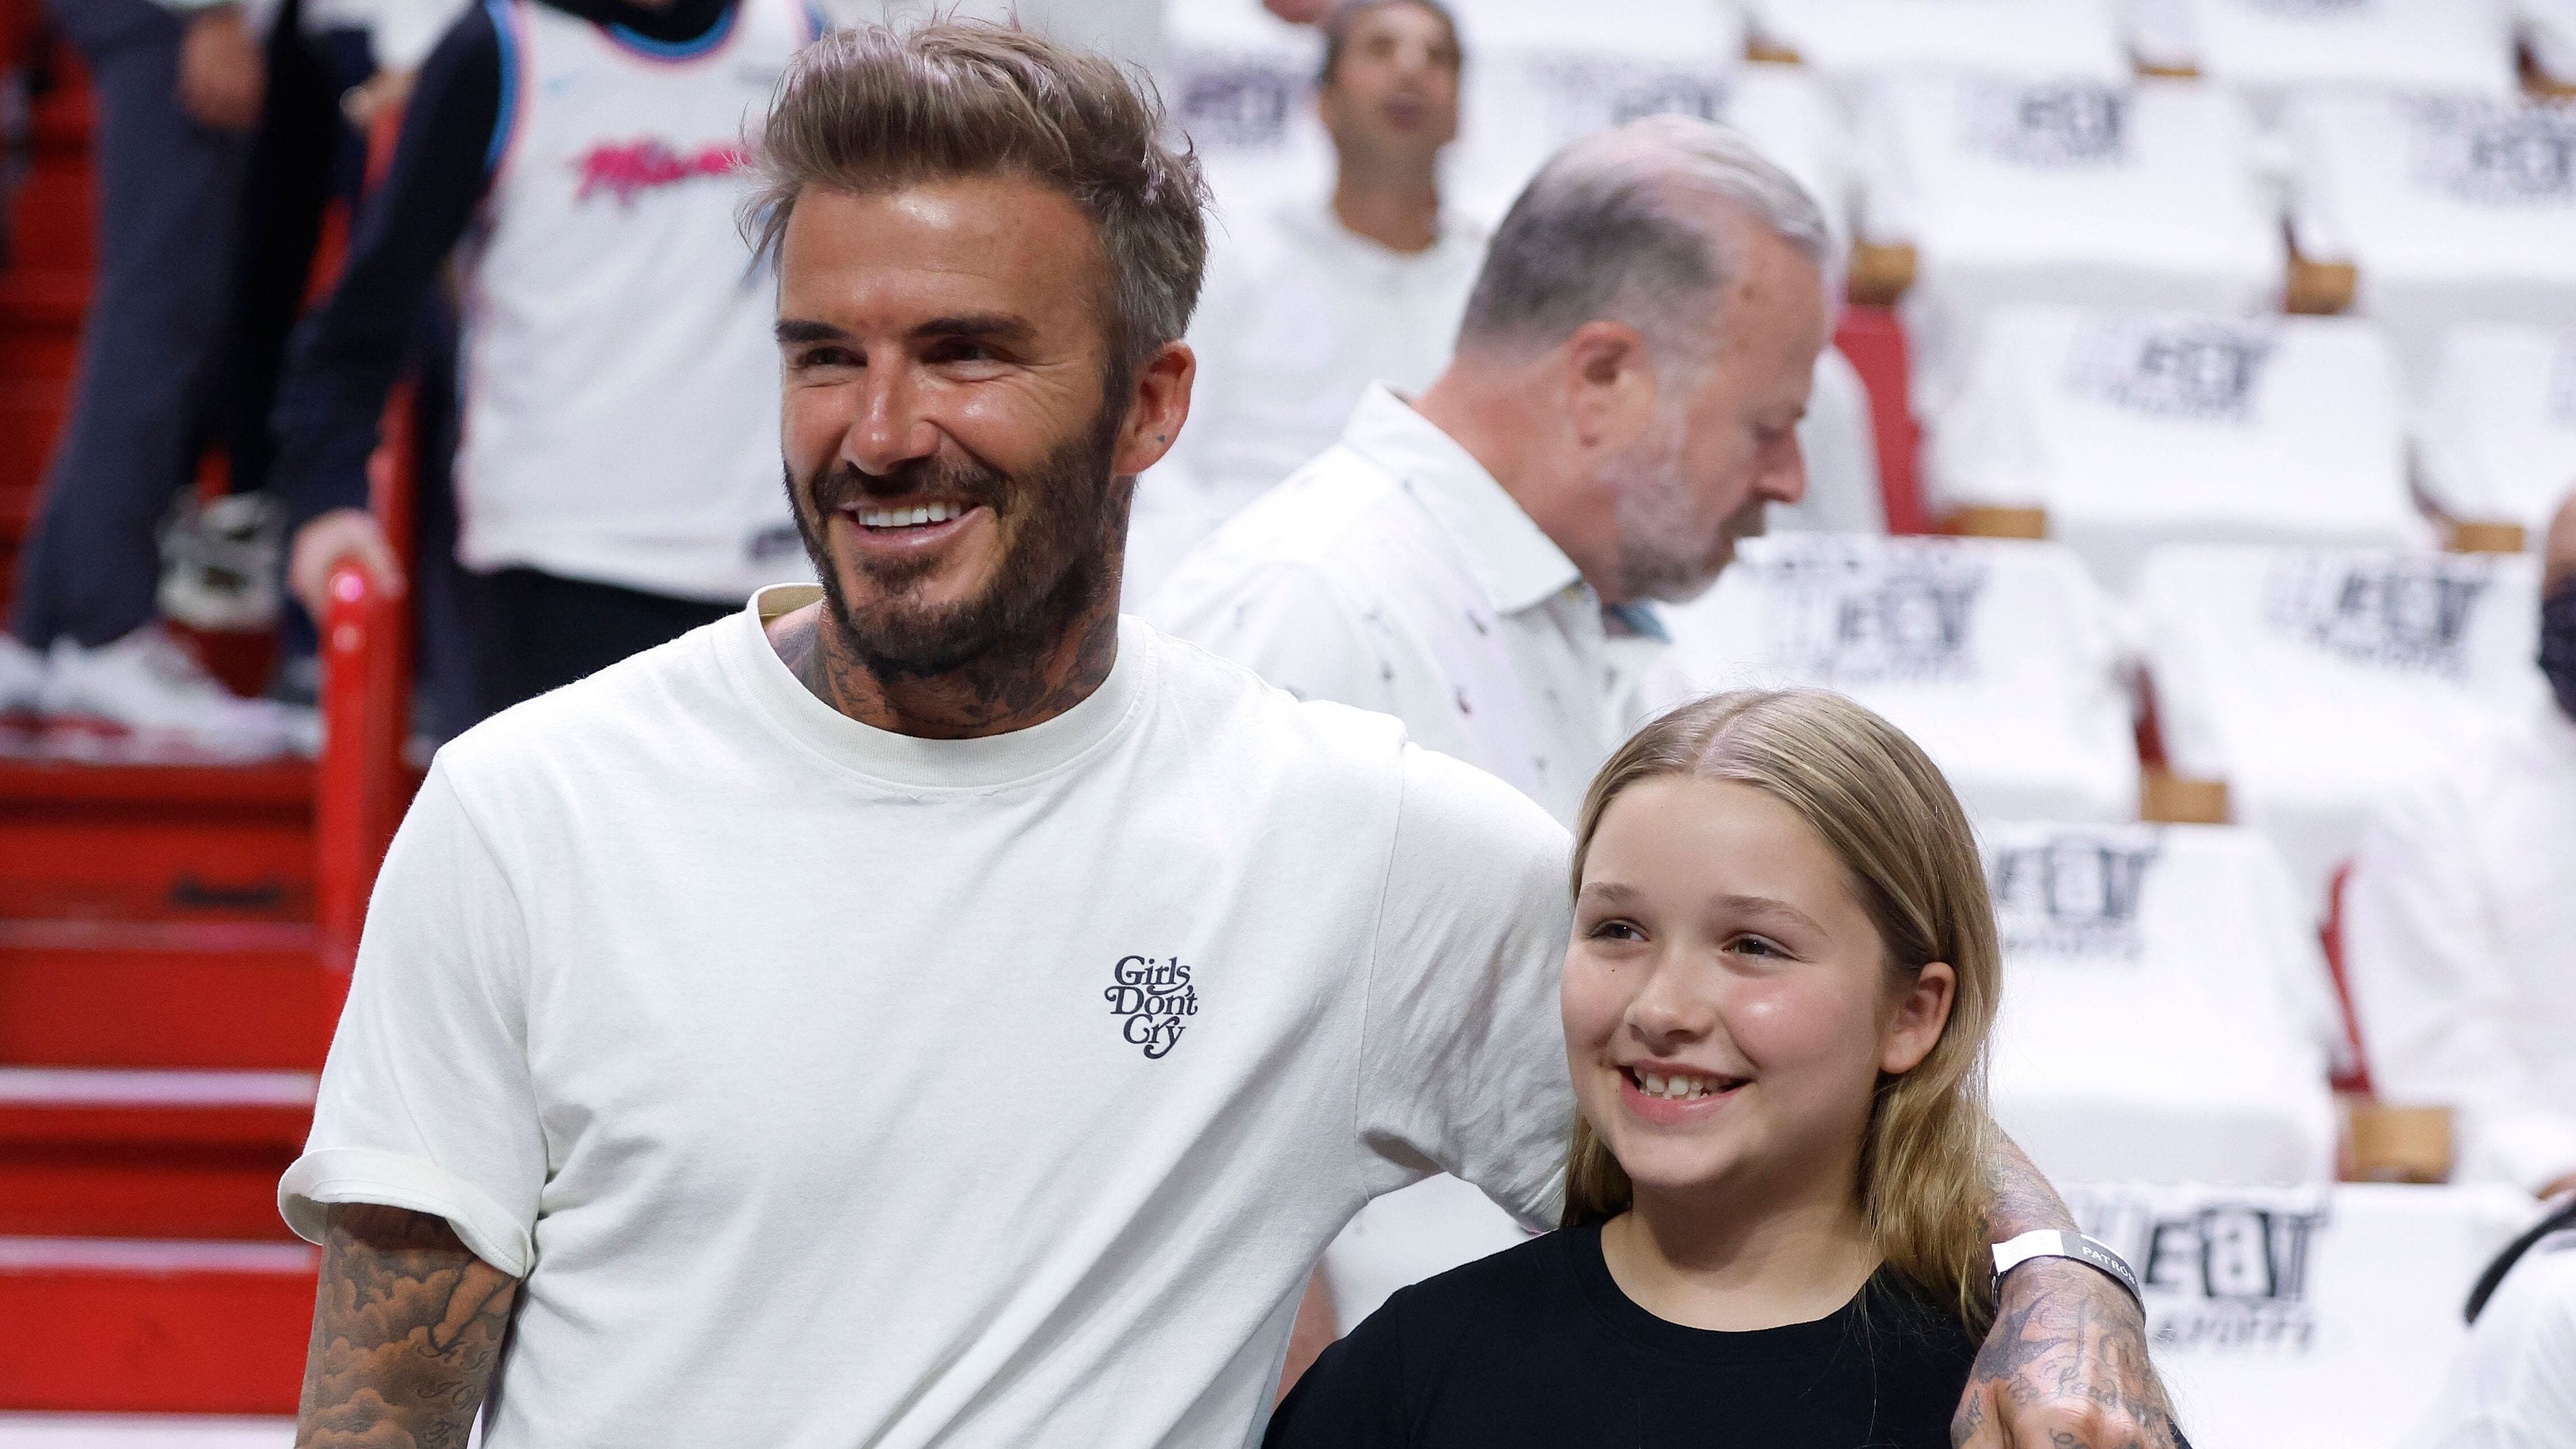 Tochter von David Beckham: Ist die zwölfjährige Harper schon tätowiert?